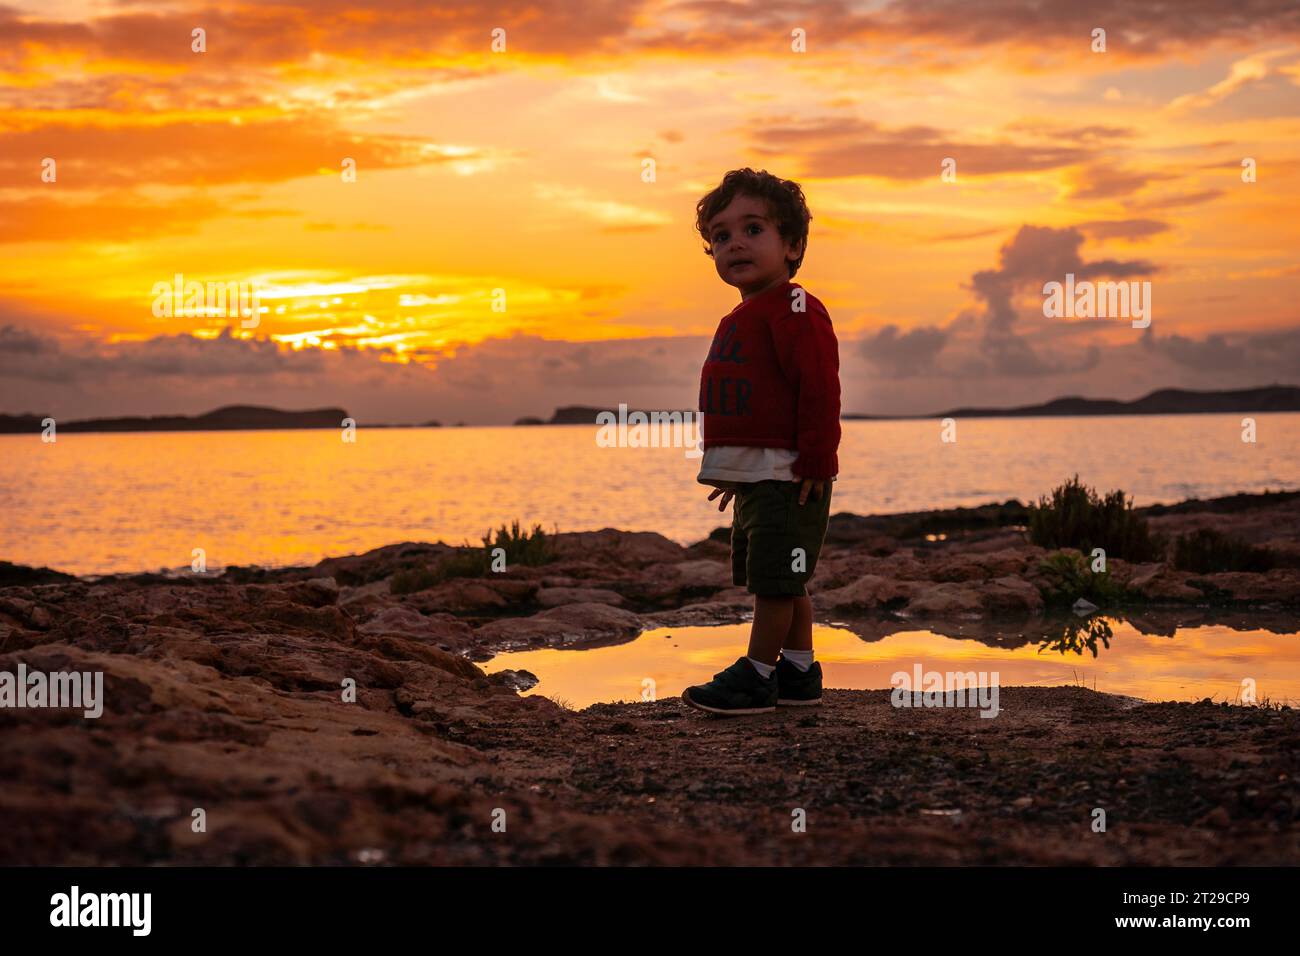 Tramonto a Ibiza in vacanza, un ragazzo di un anno che si diverte sul mare a San Antonio Abad Foto Stock